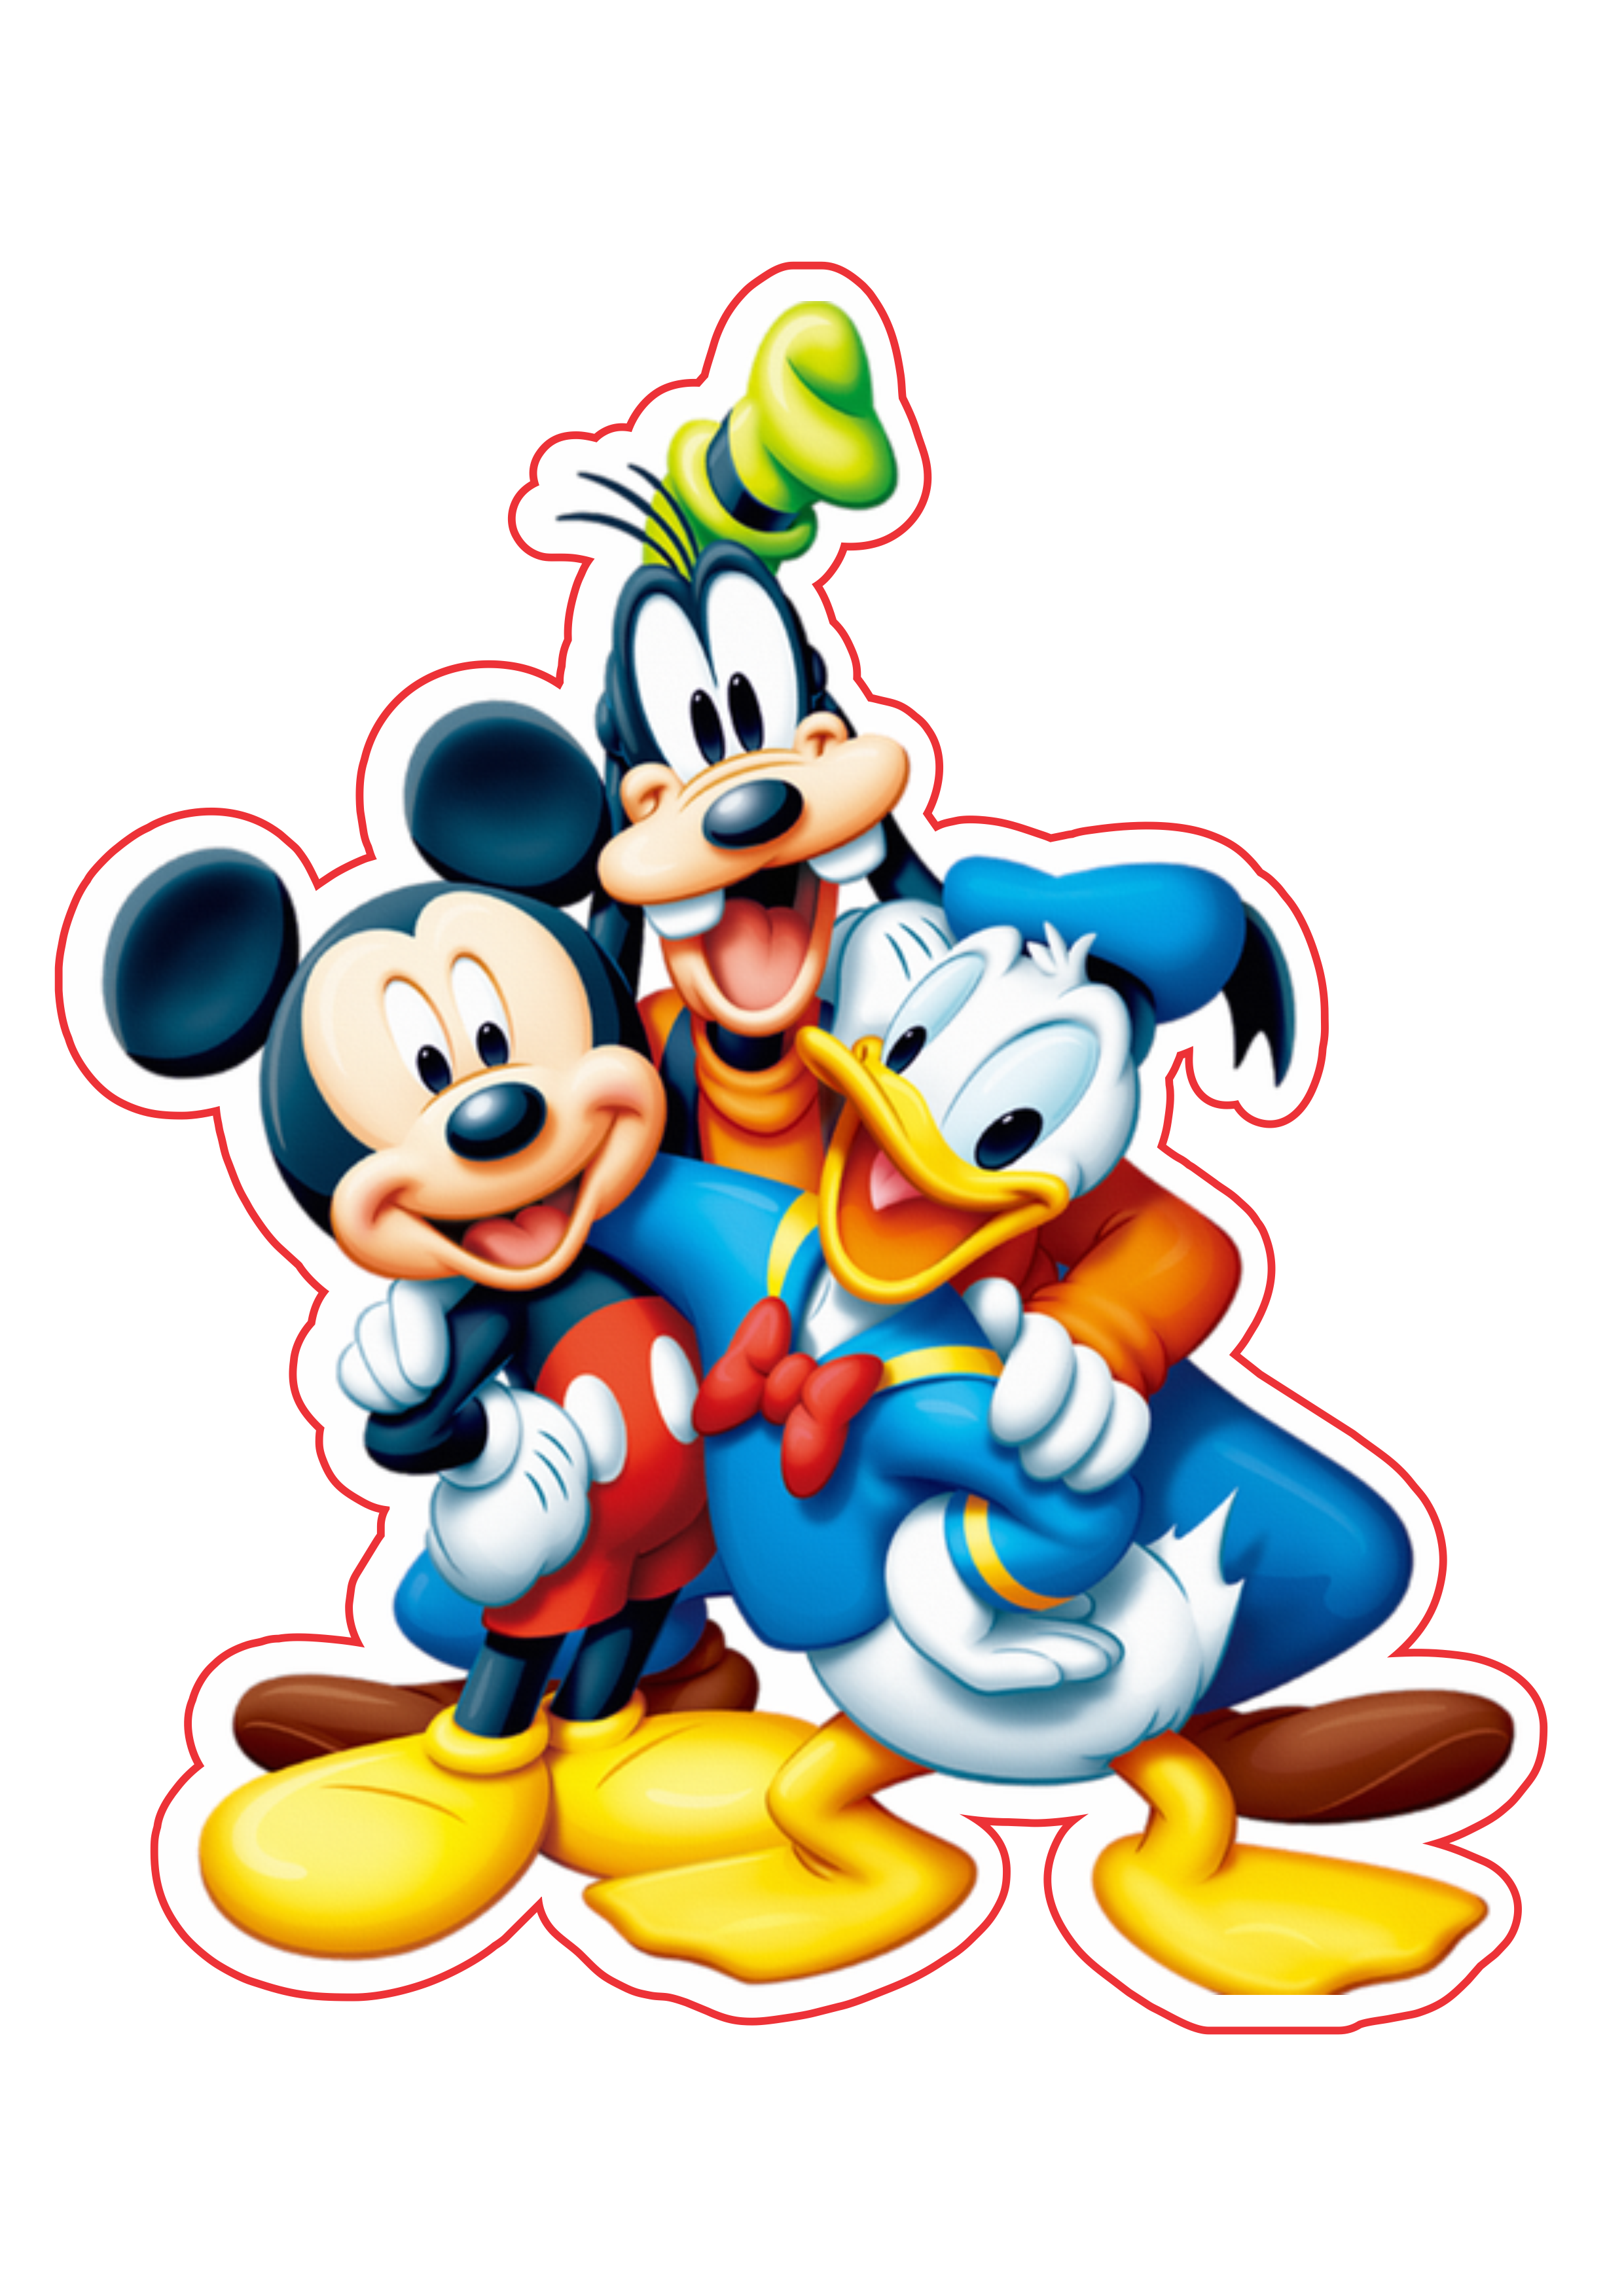 Mickey e sua turma imagem fundo transparente png